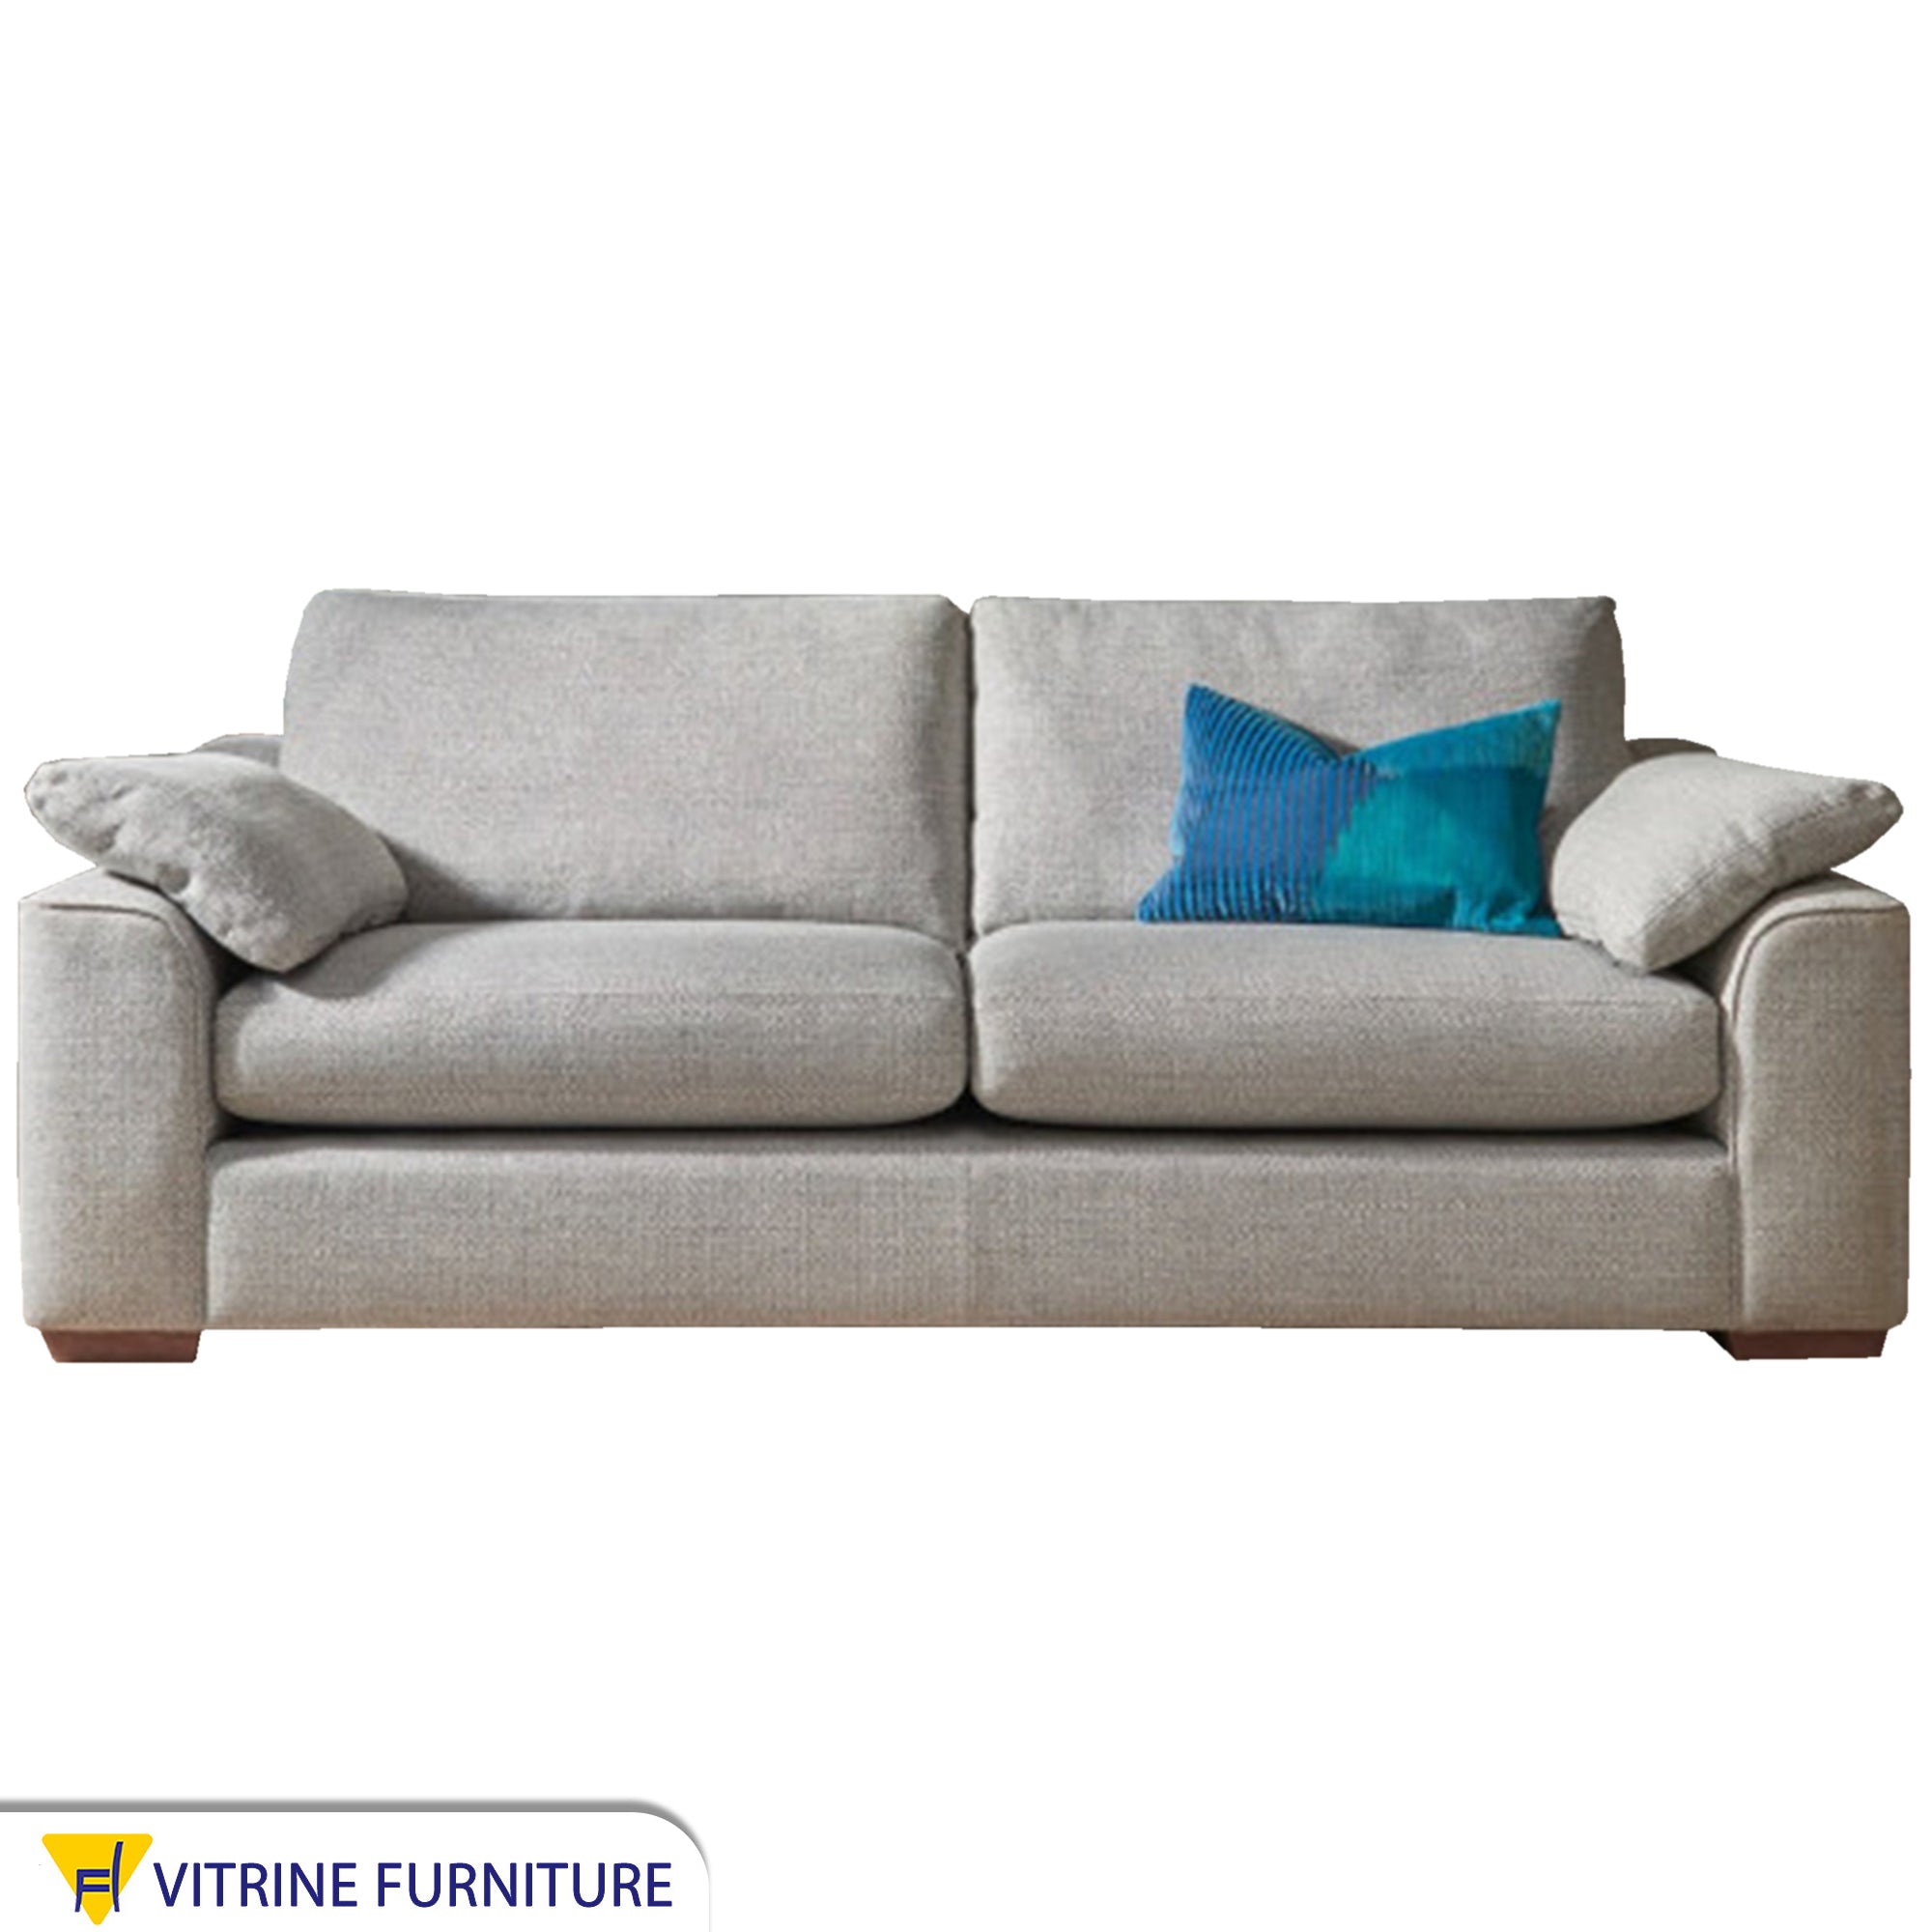 Soft gray sofa